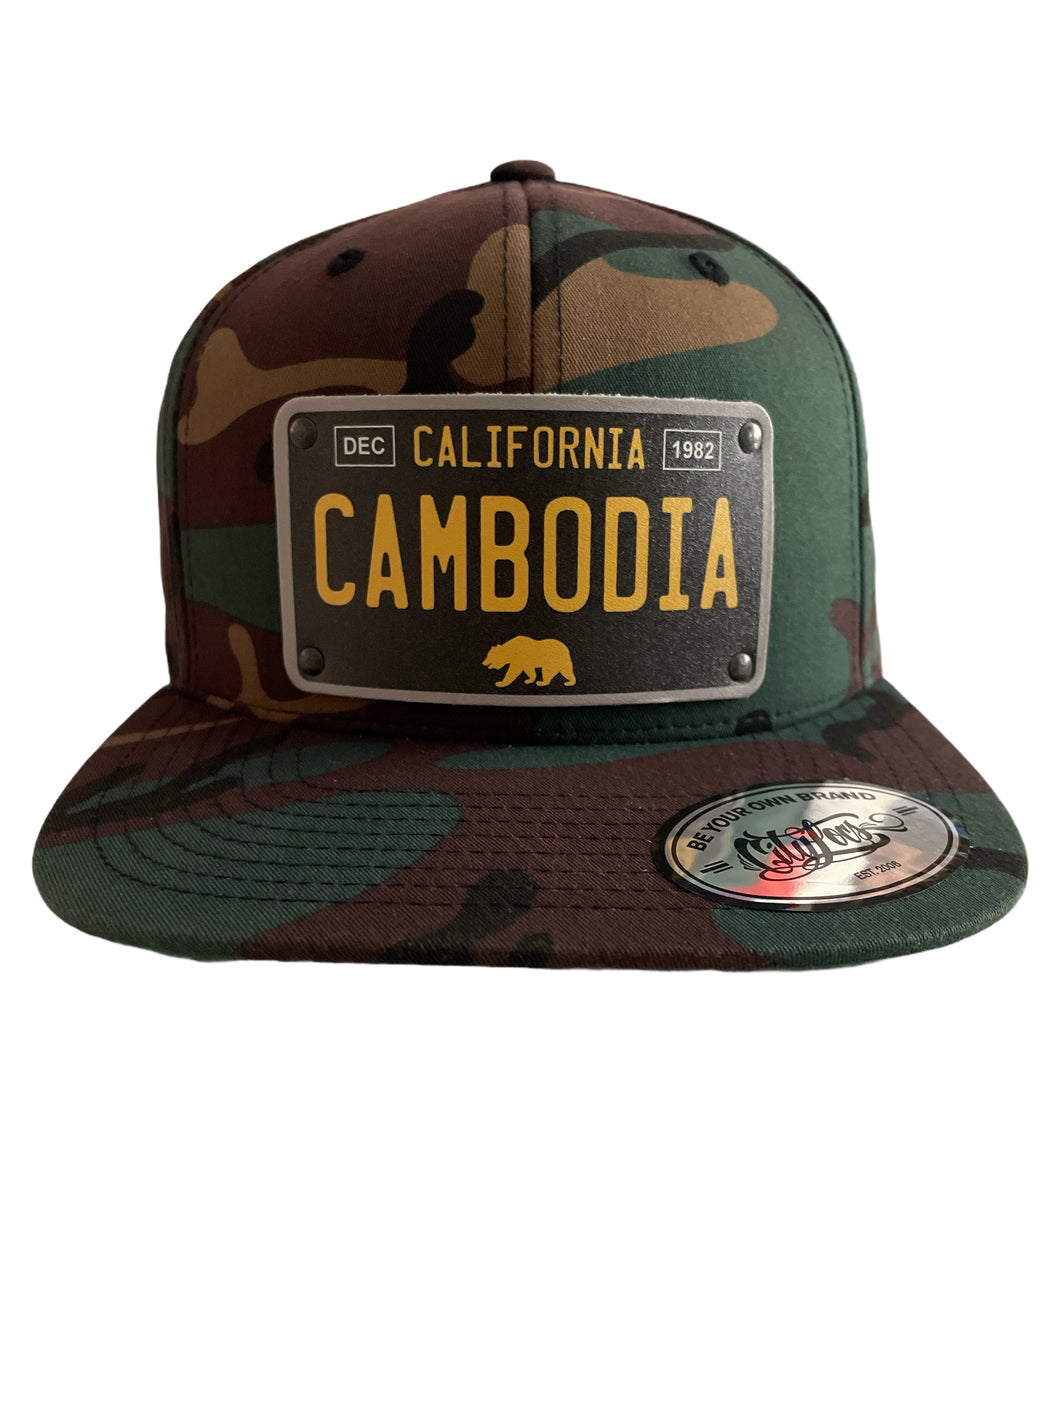 Cambodia Camo Cali Hat